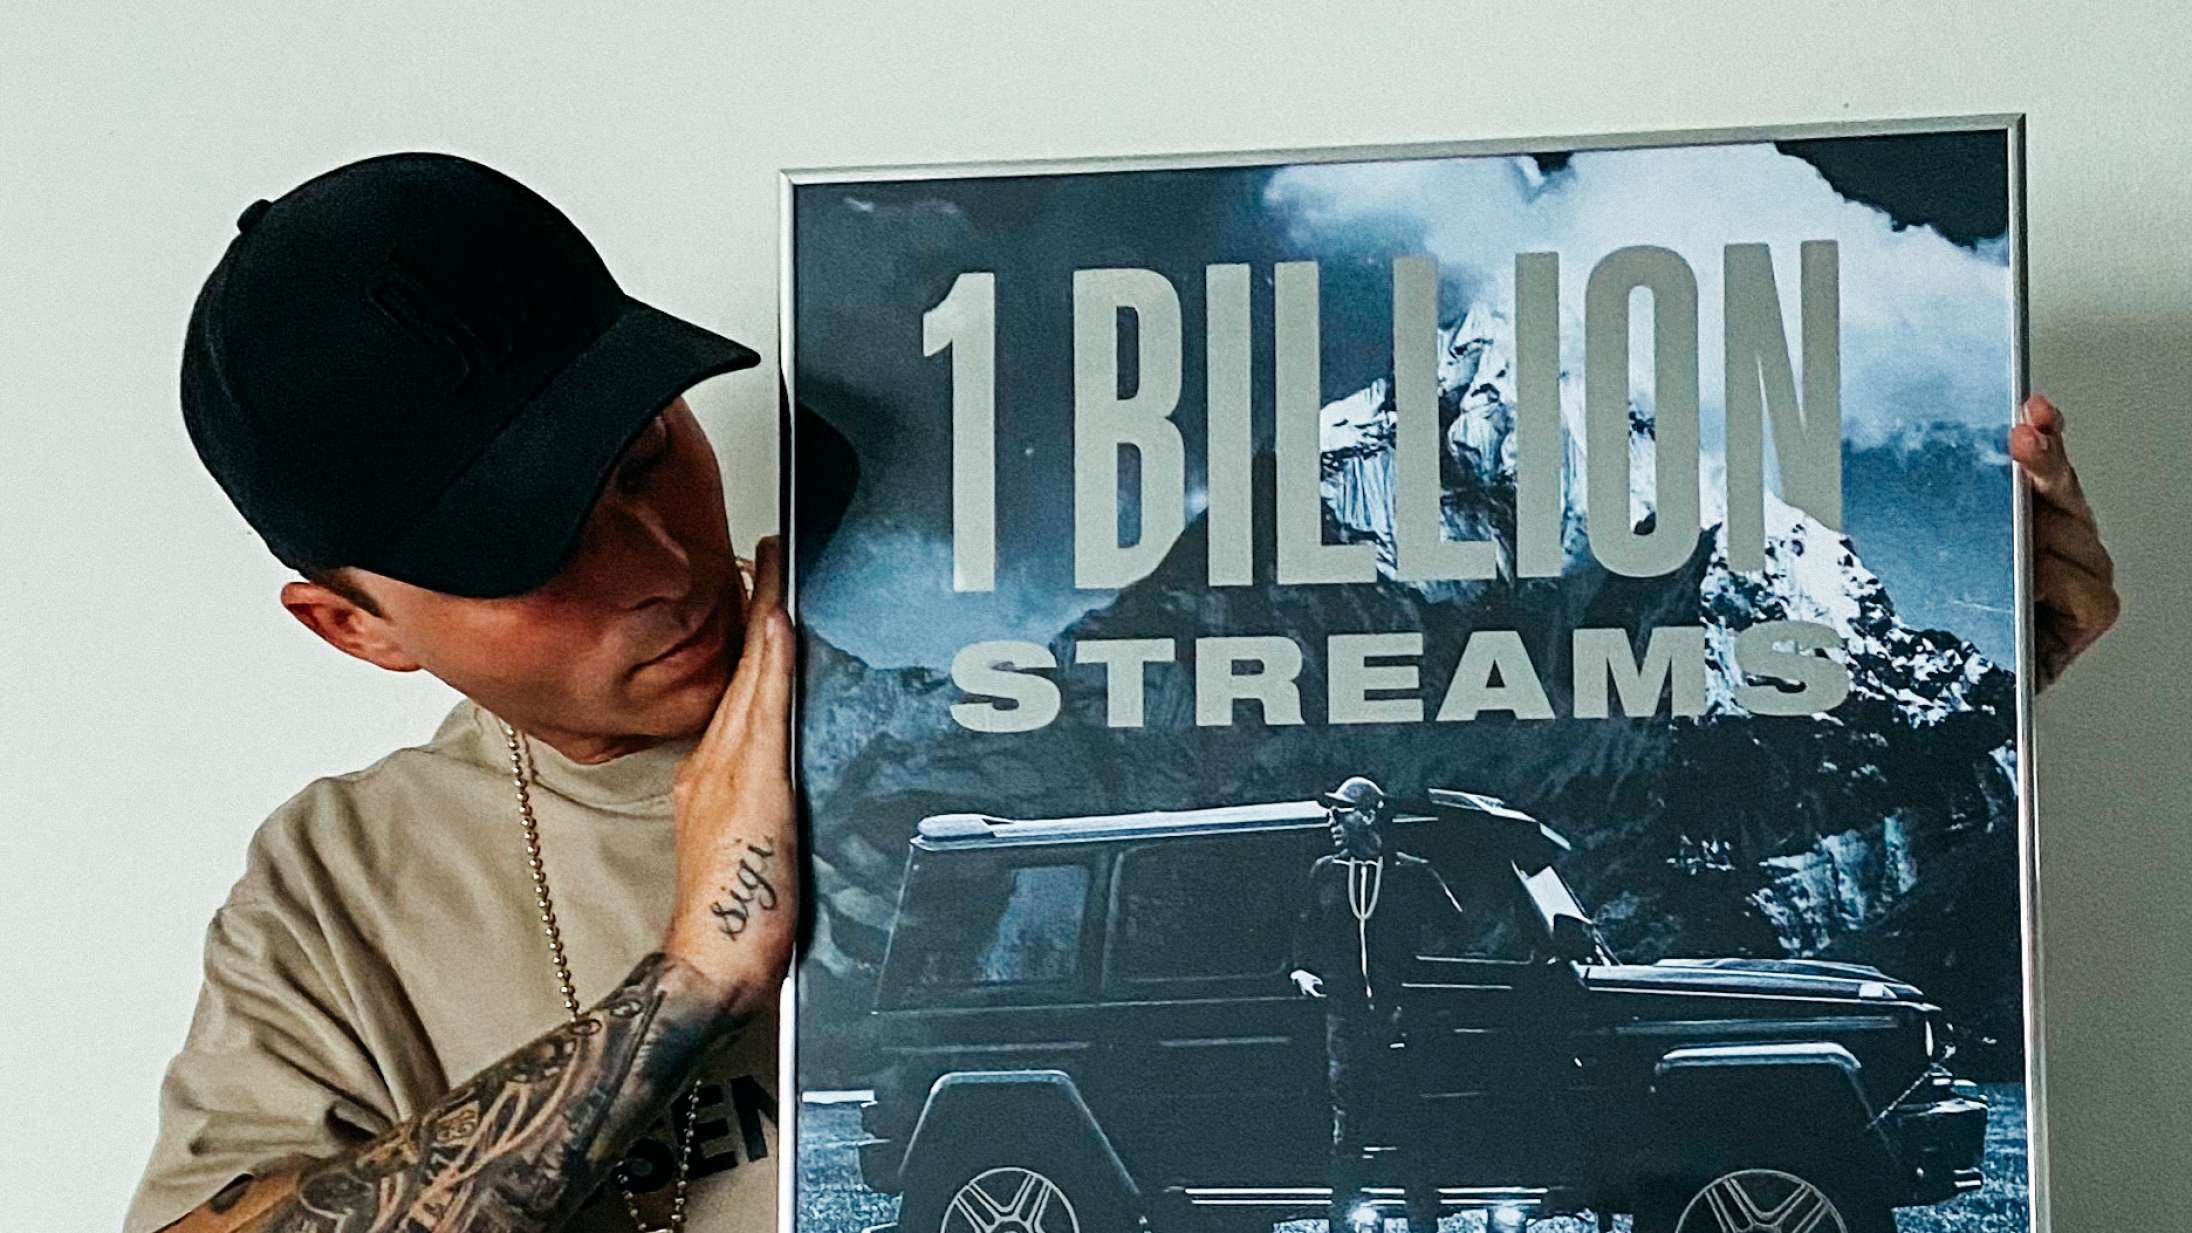 Gilli har rundet en milliard streams – som første danske kunstner